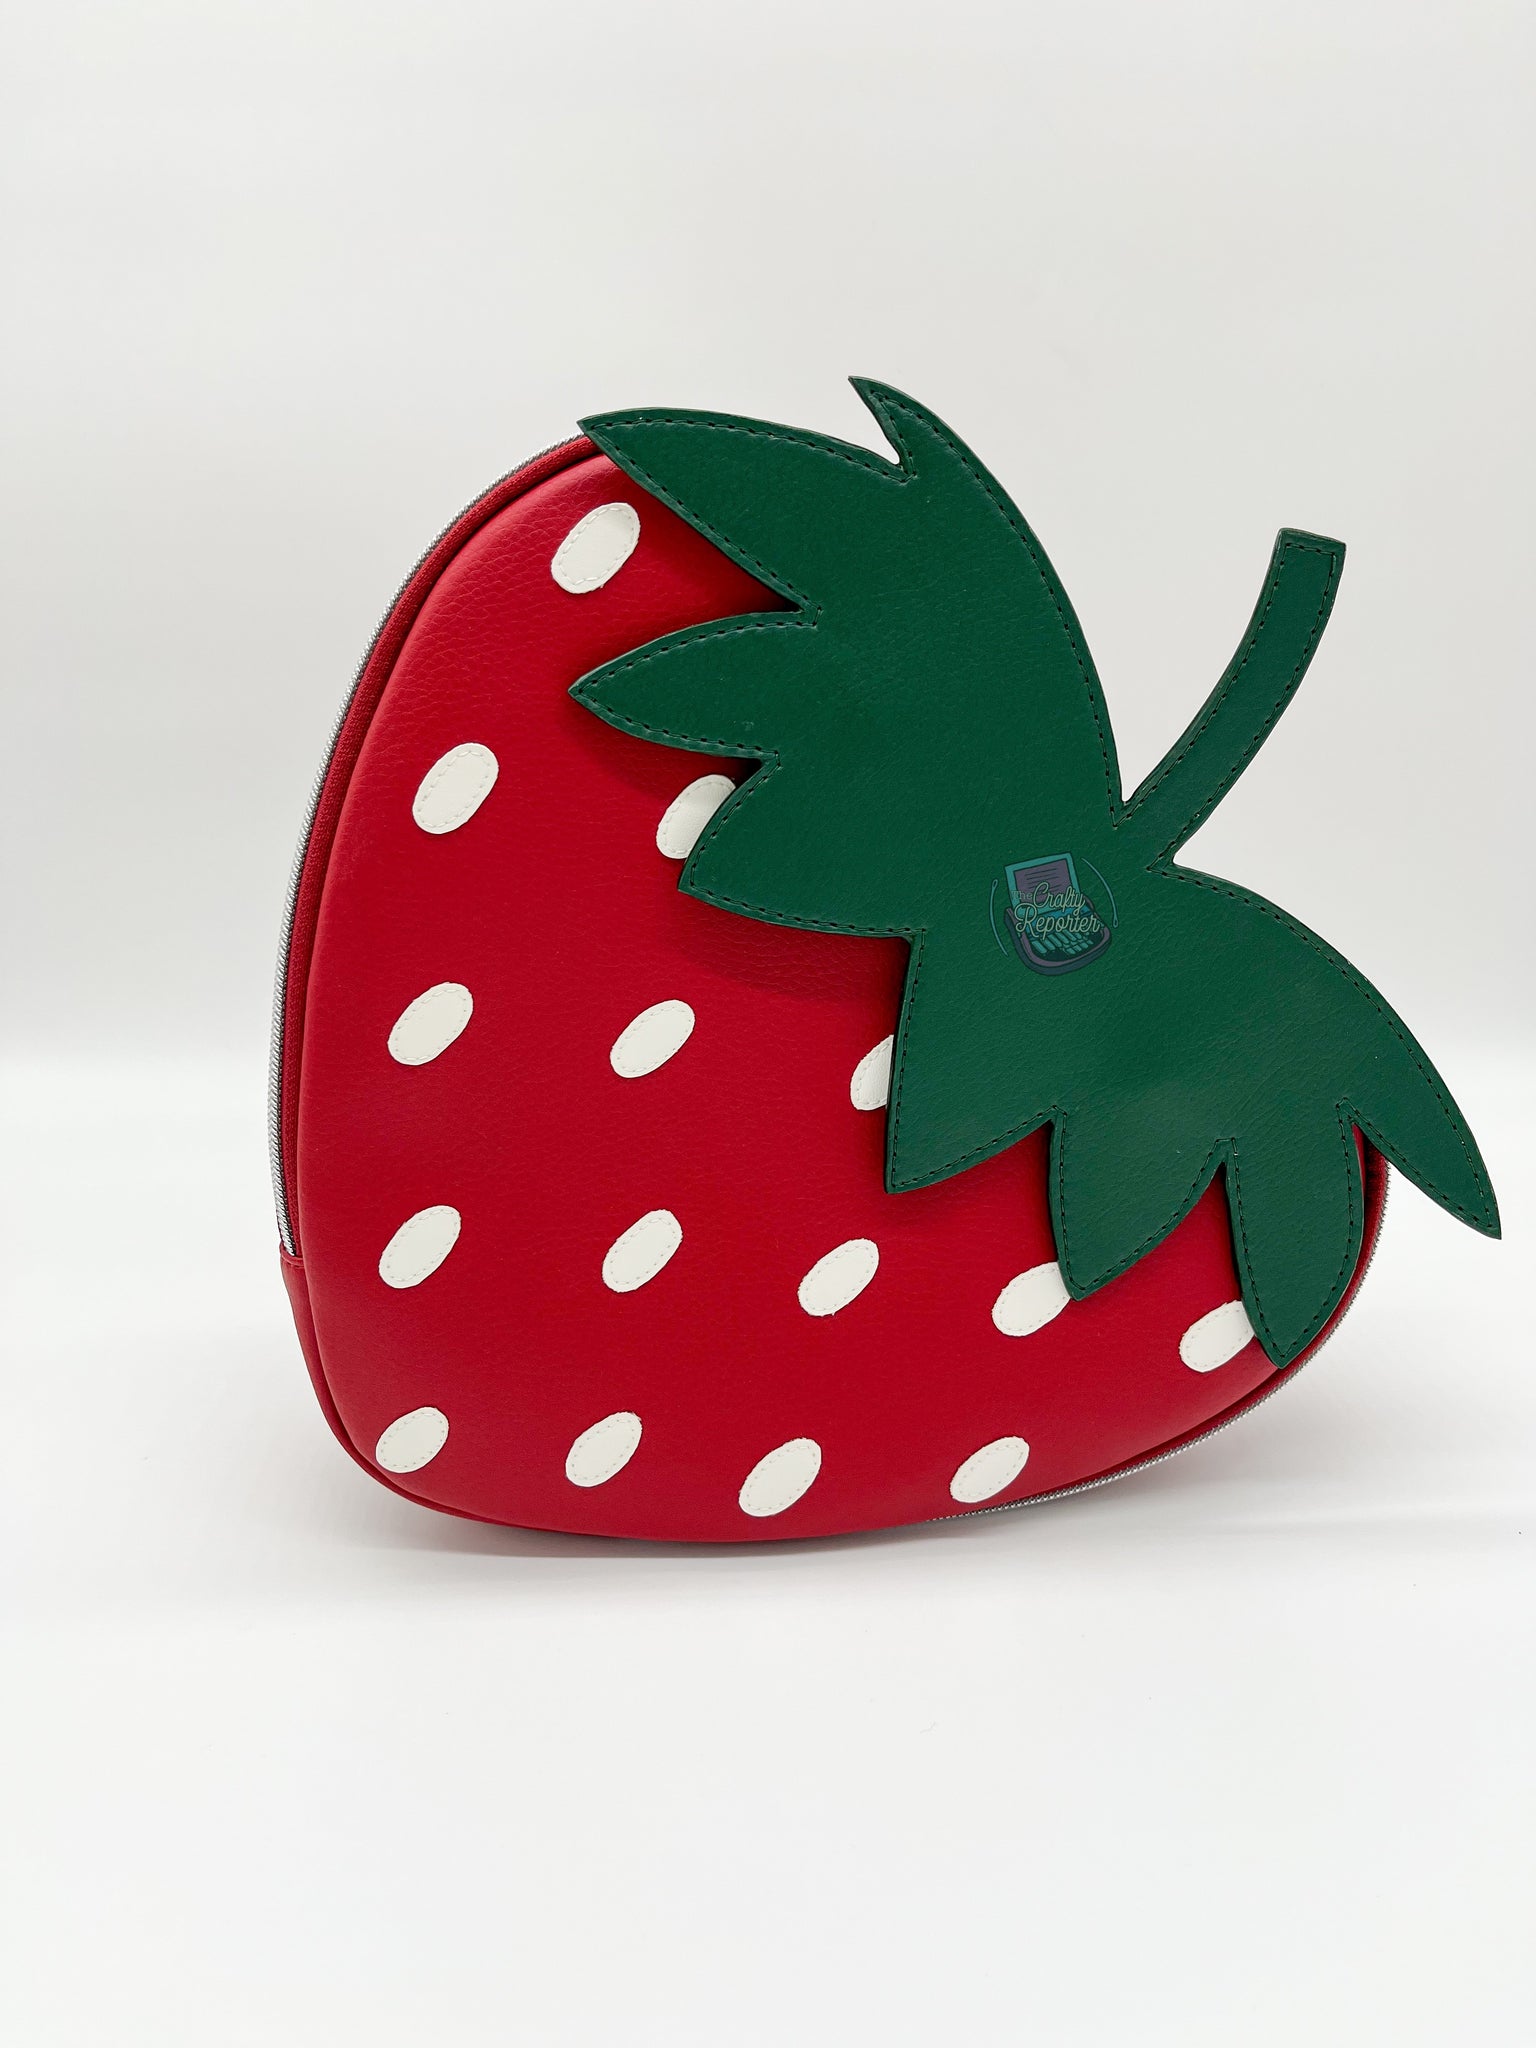 Strawberry Applique Add-on - Heartbreaker Bag by K.Azcona Designs